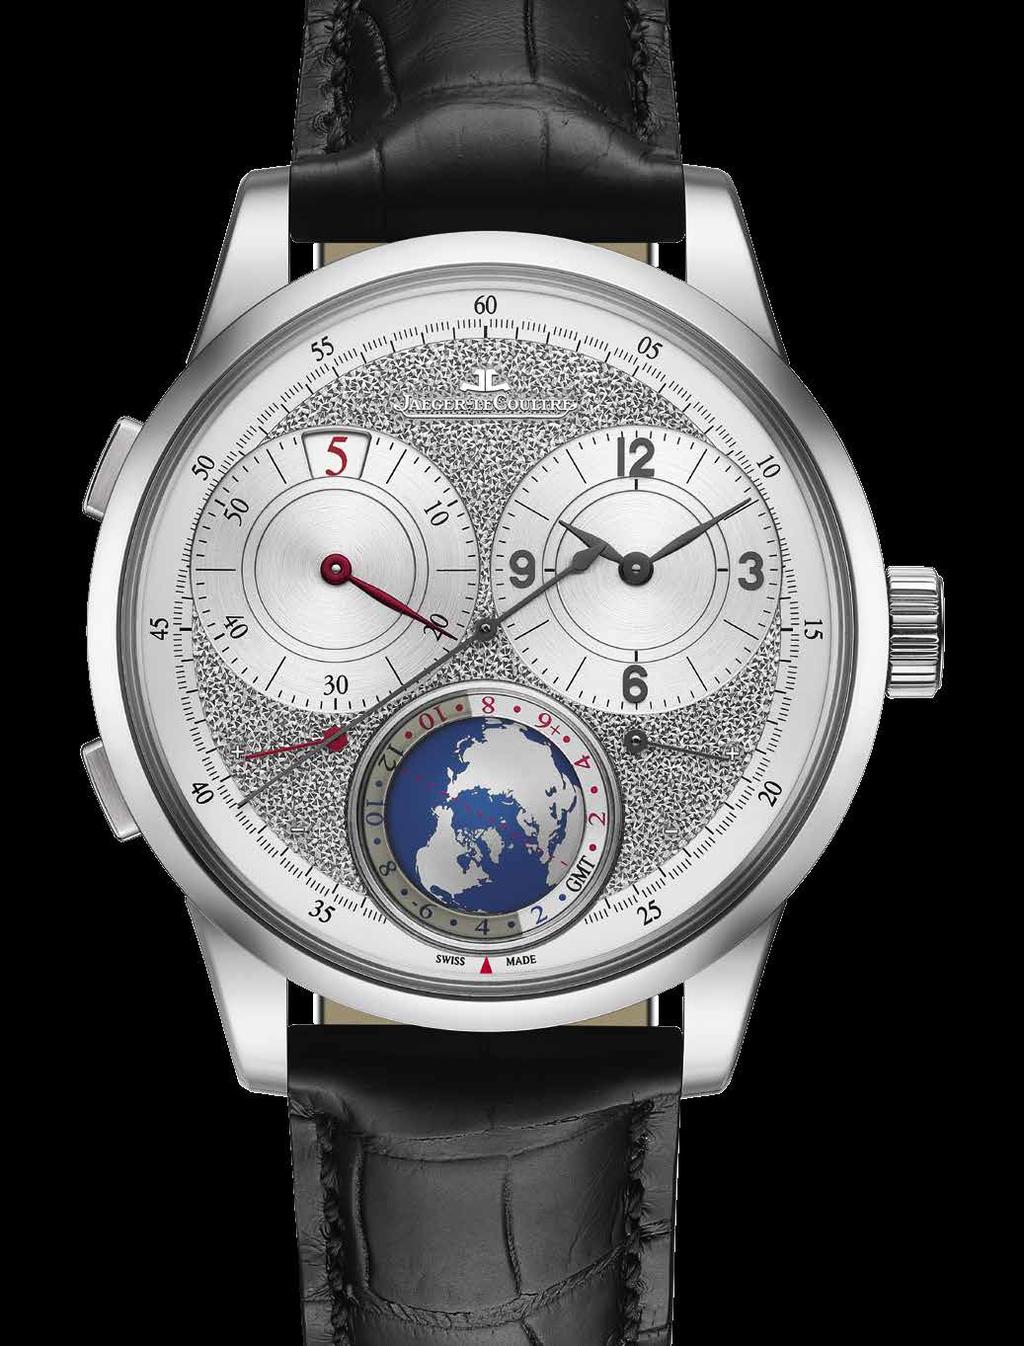 Duomètre Unique Travel Time In dieser Uhr vereint sich zum ersten Mal der Komfort einer Weltzeit-Anzeige mit der Flexibilität einer minutengenauen Uhrzeiteinstellung am Zielort.